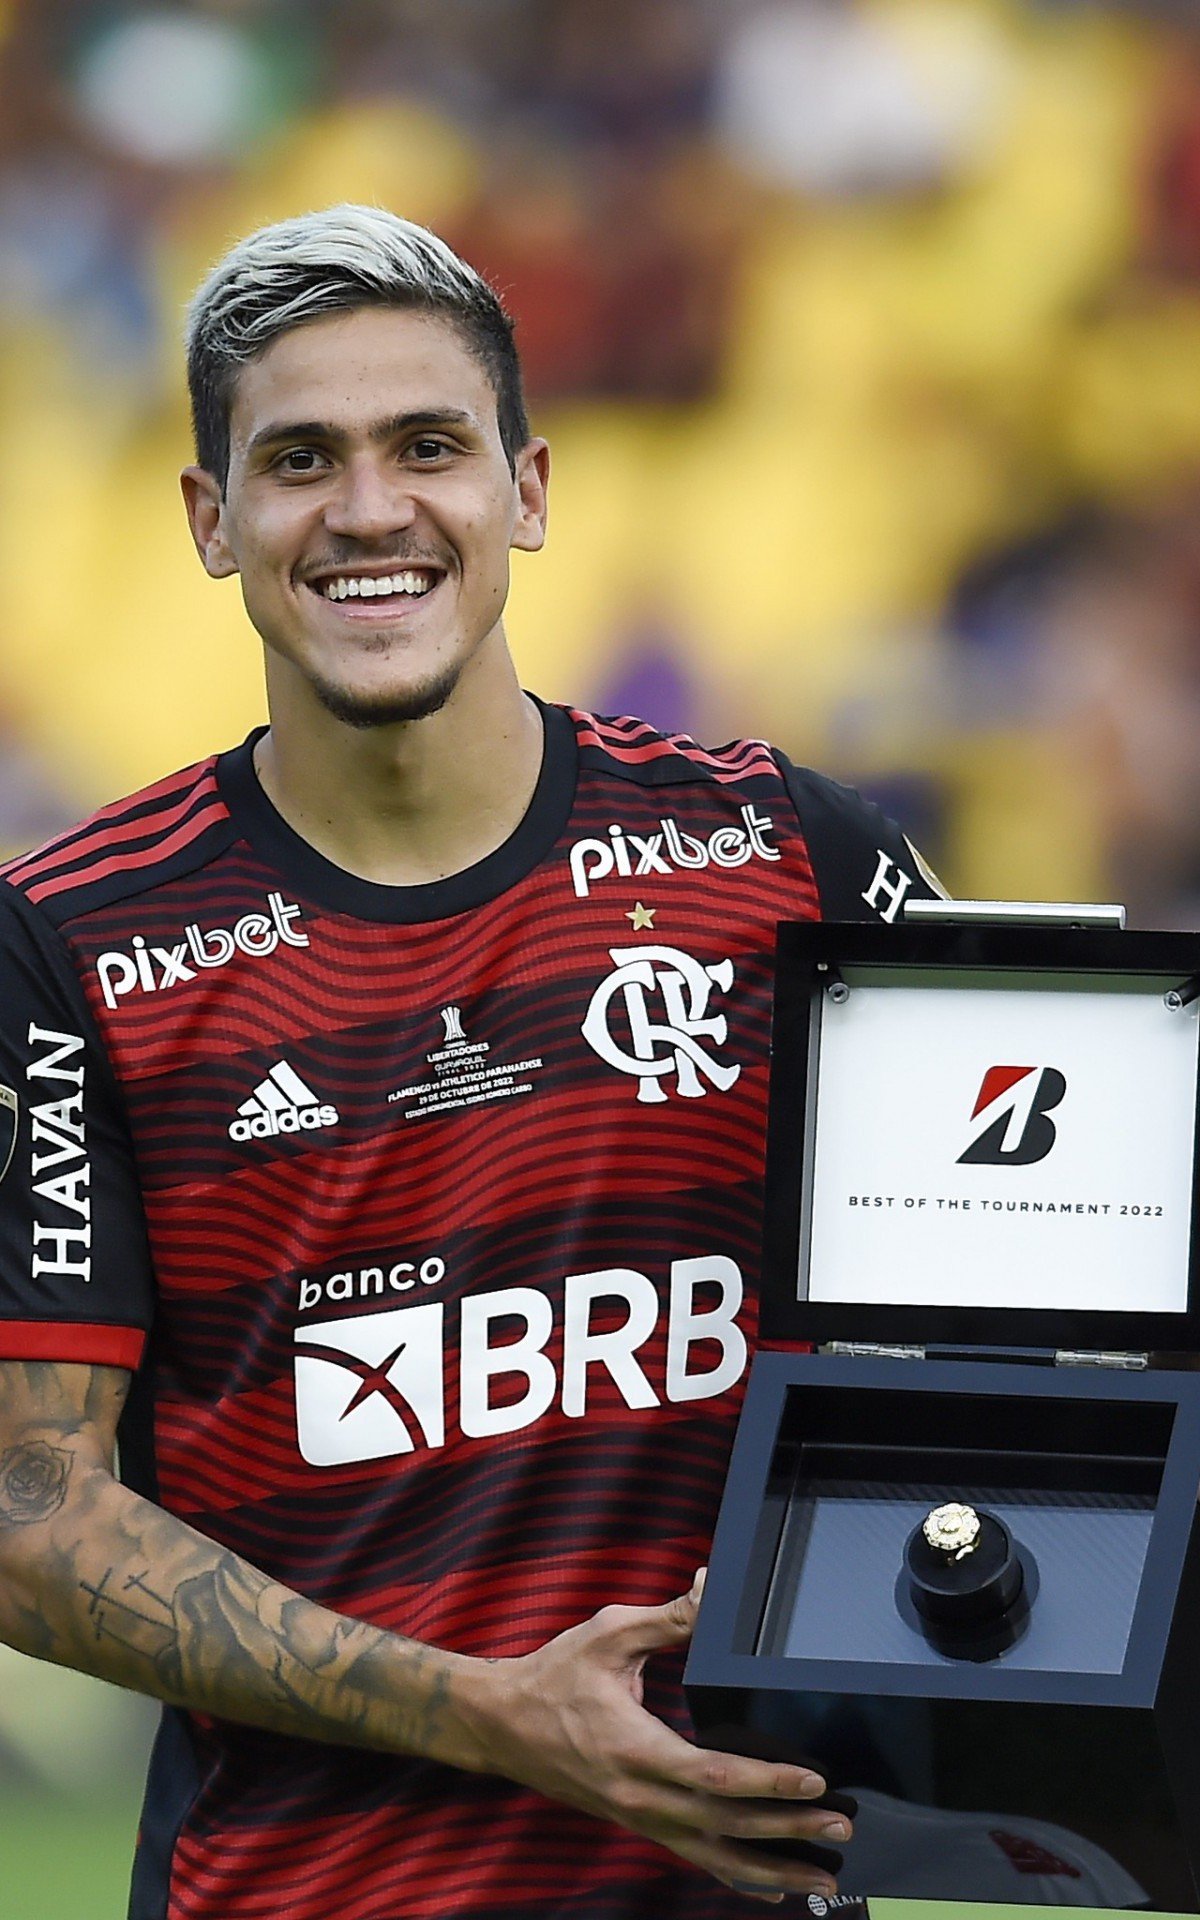 Com seis jogadores, Flamengo domina a seleção da Libertadores